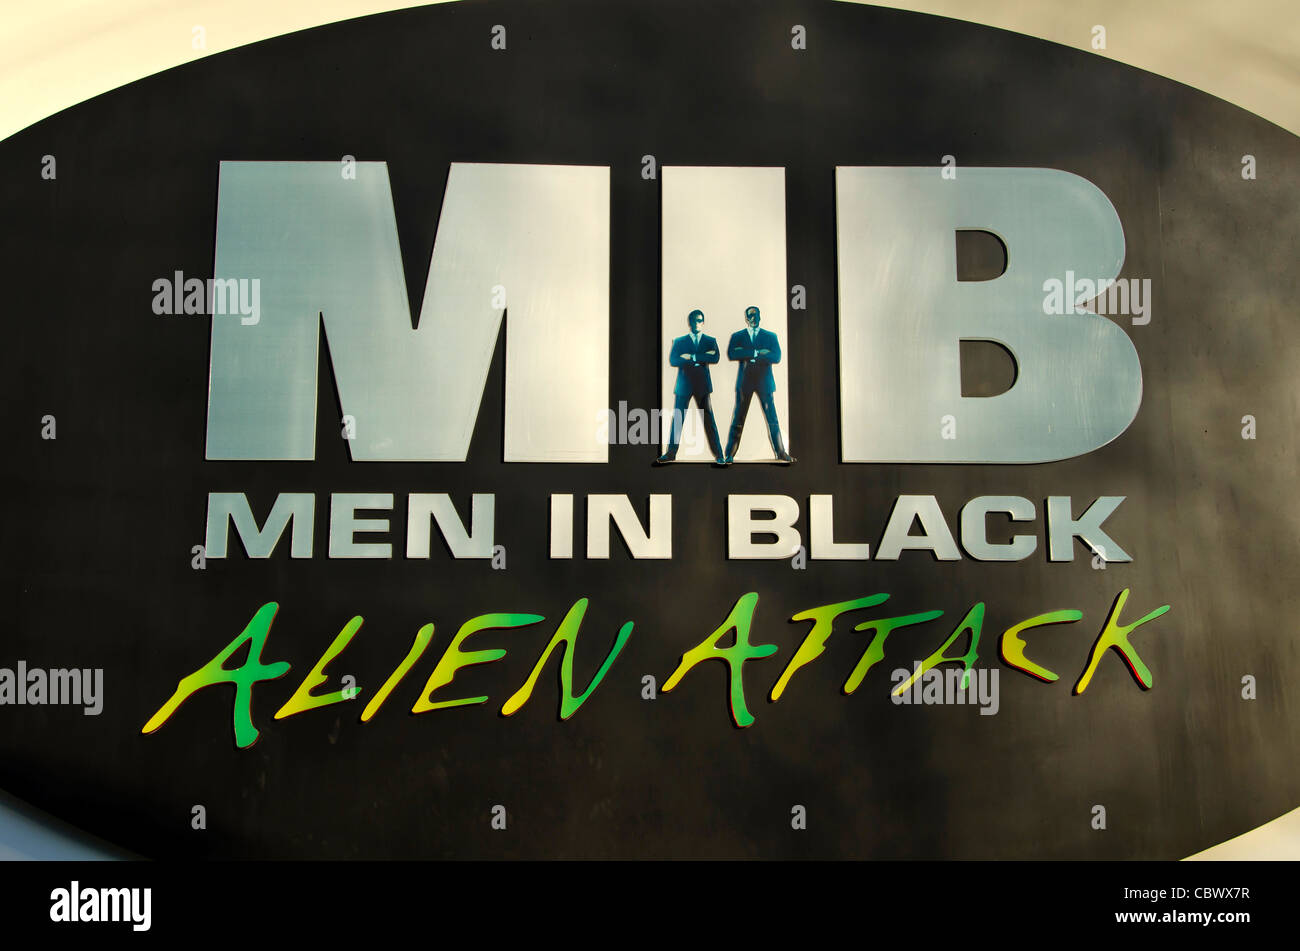 Men in Black Alien Attack segno di attrazione per gli Universal Studios Orlando in Florida Foto Stock